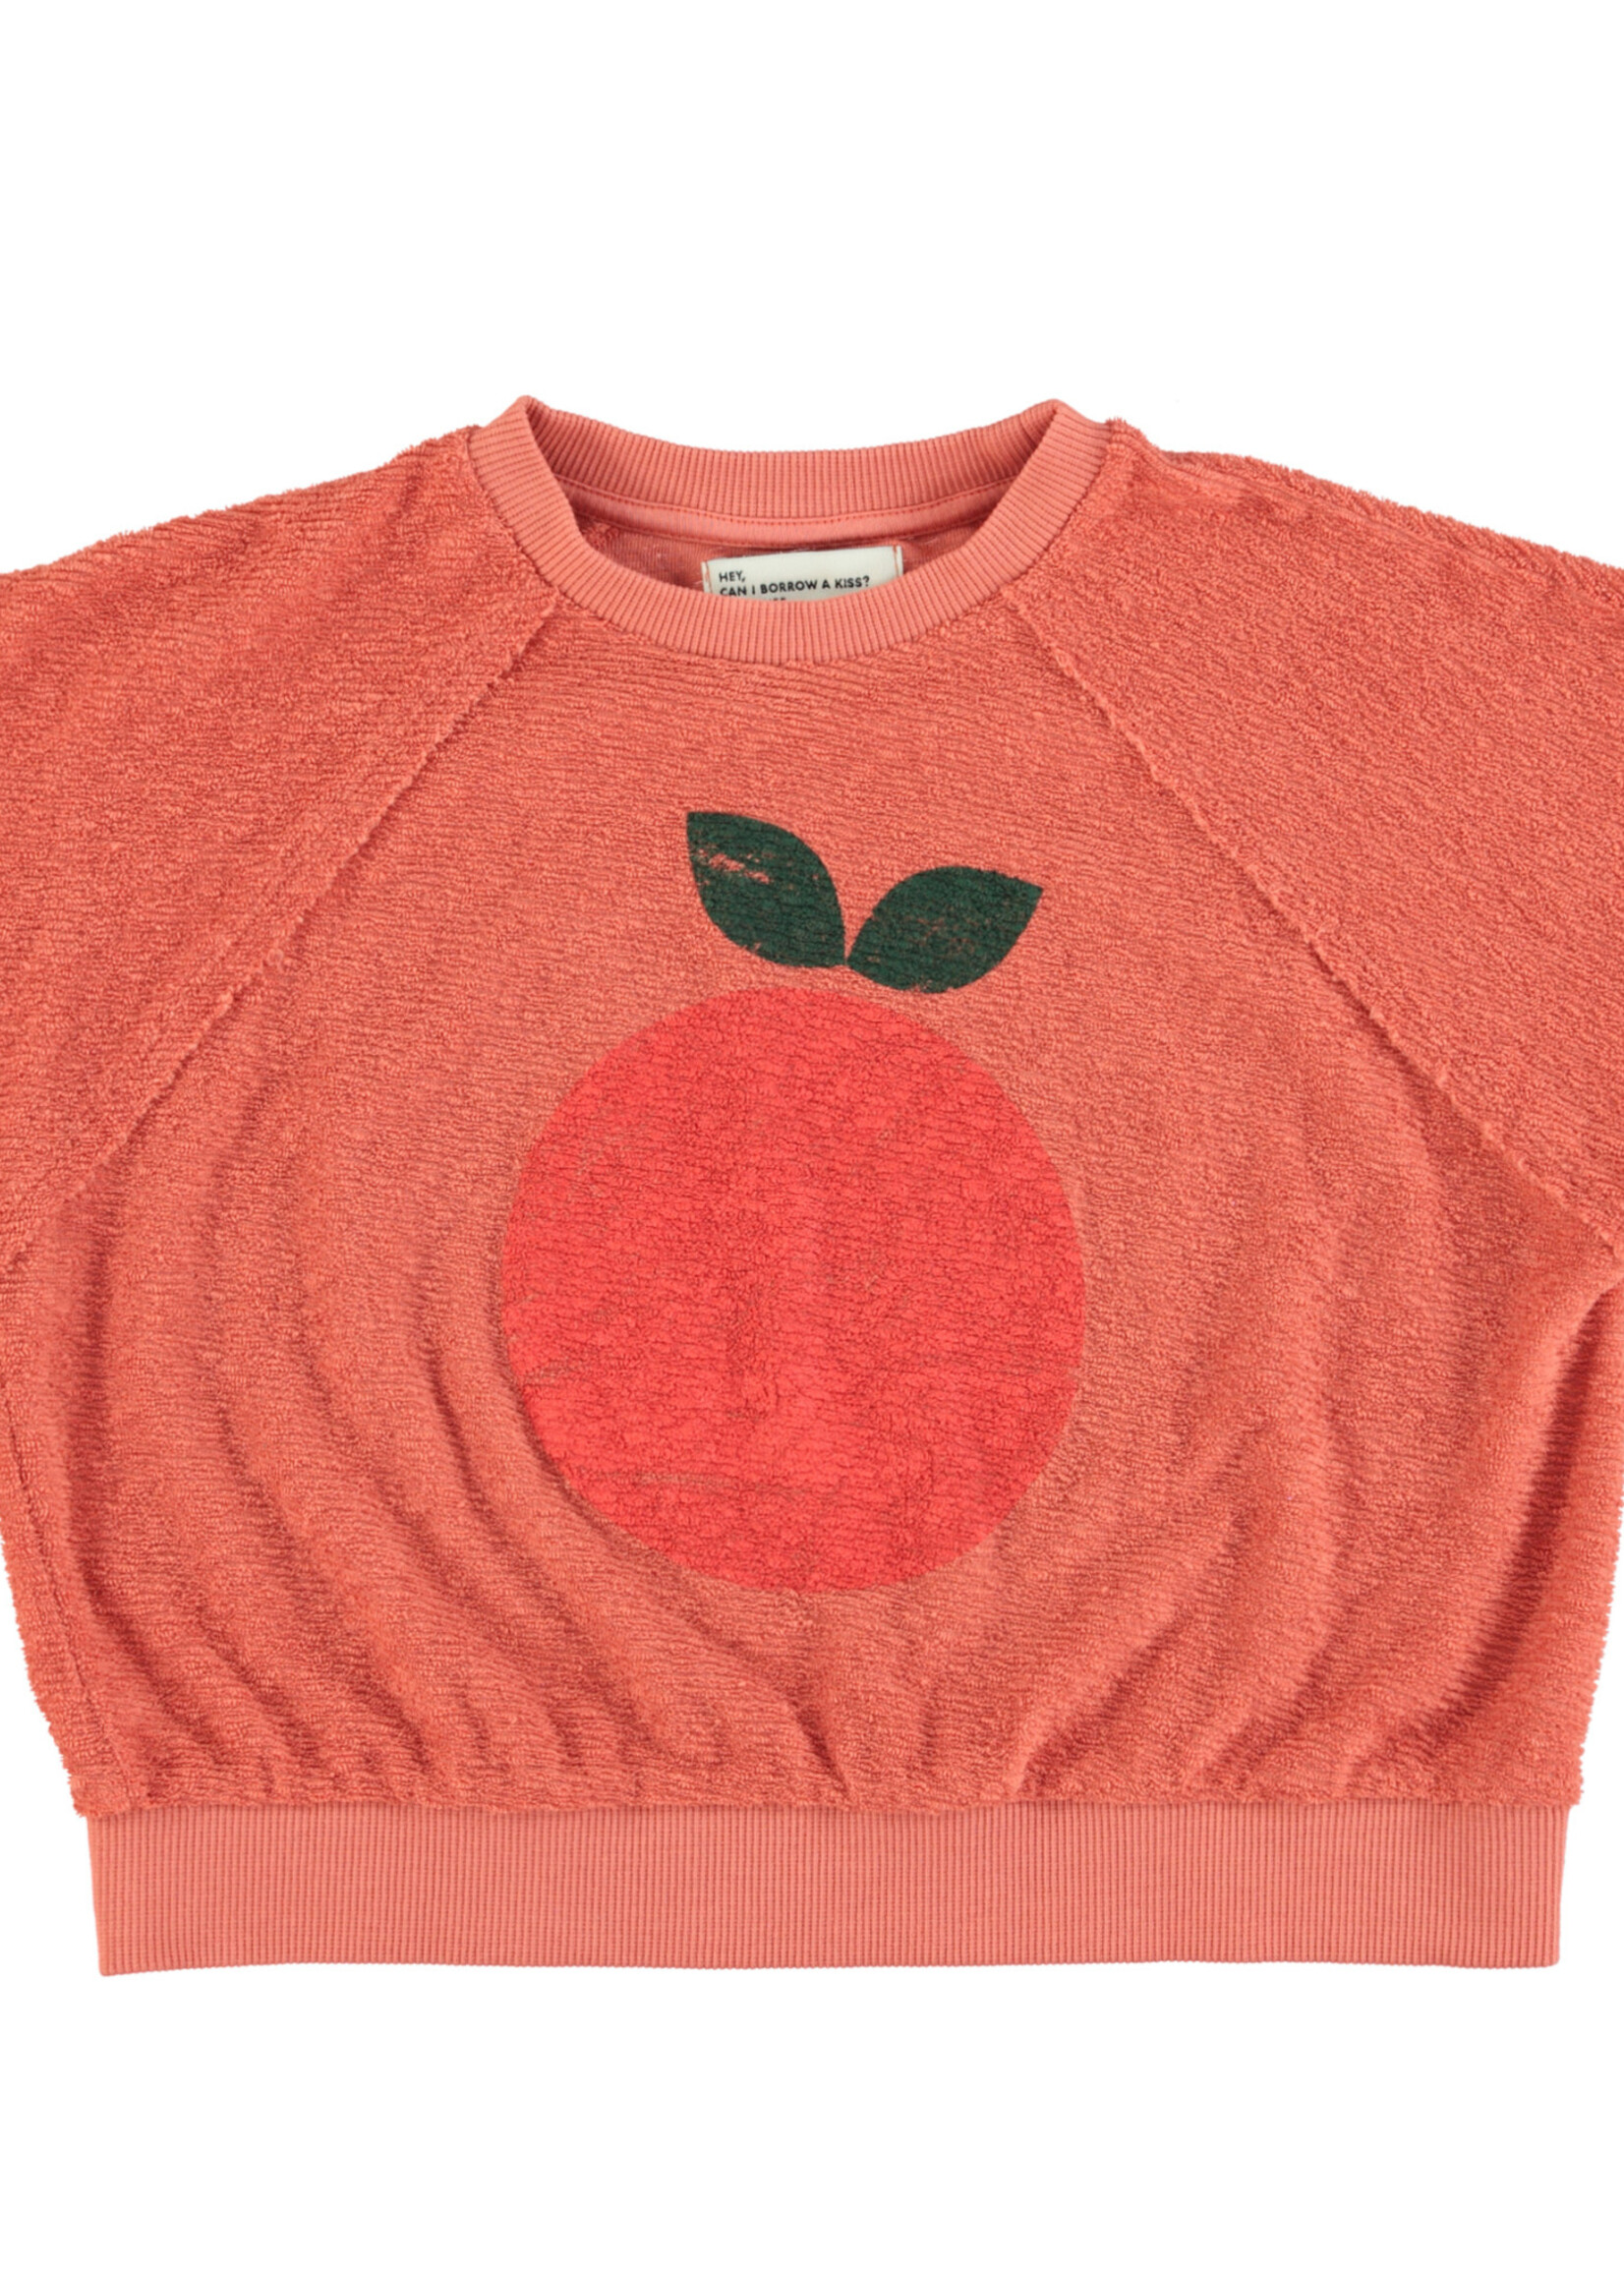 Piupiuchick Sleeveless sweatshirt Terracotta apple print - Piupiuchick